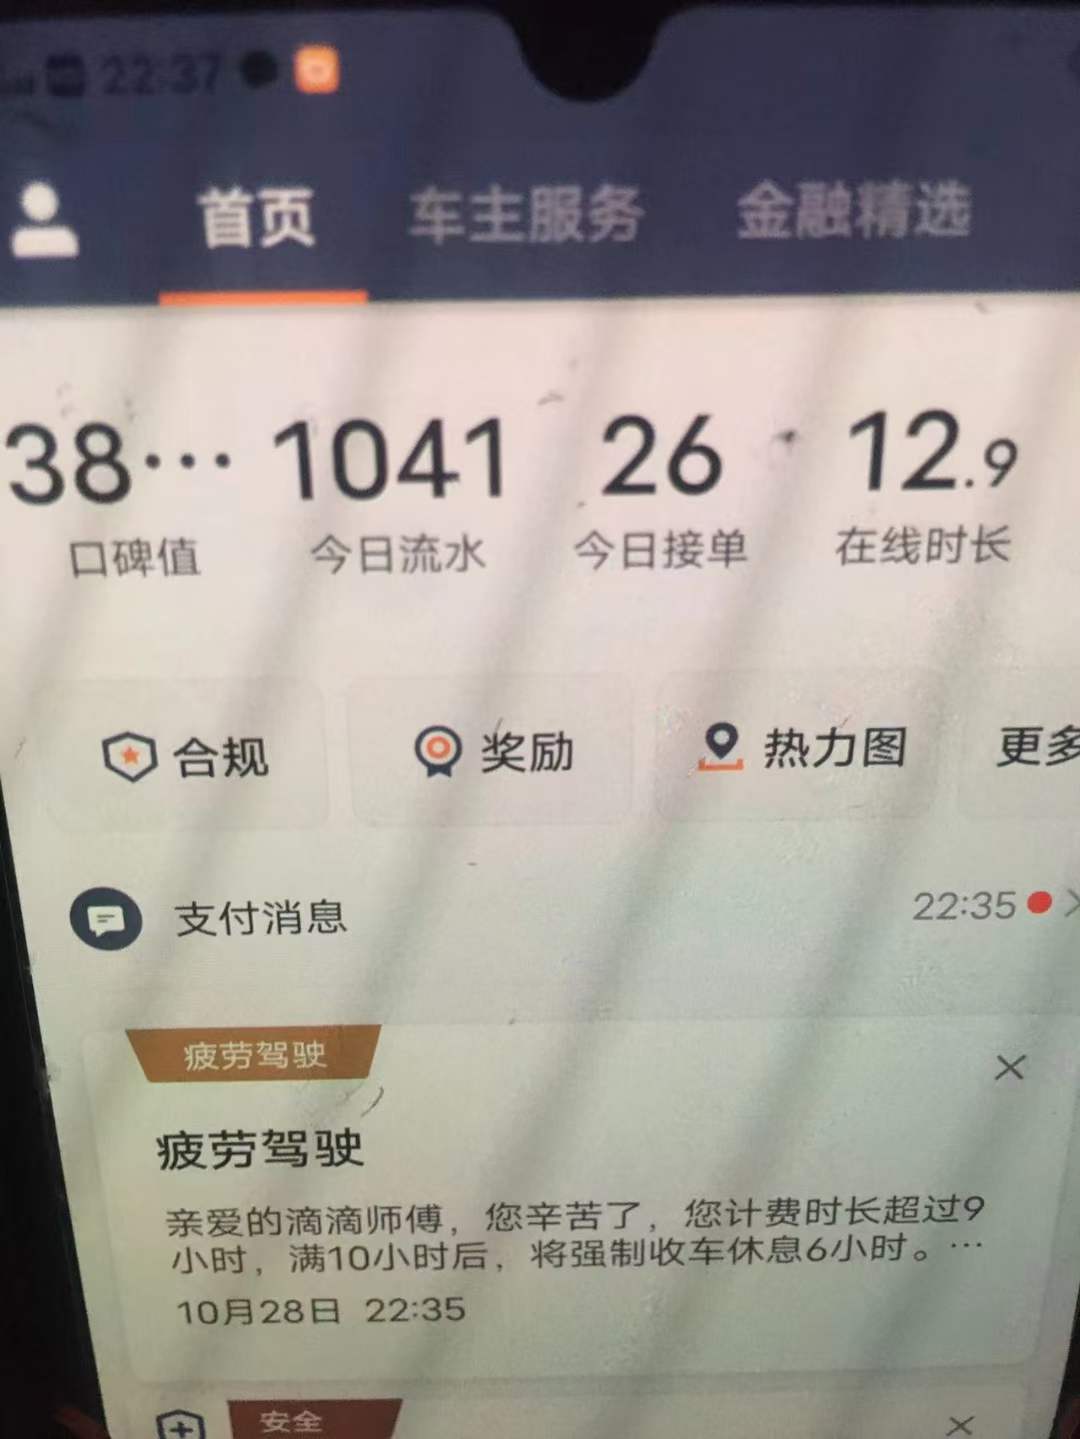 主变量上海网约车是起步价怎么样行业资讯